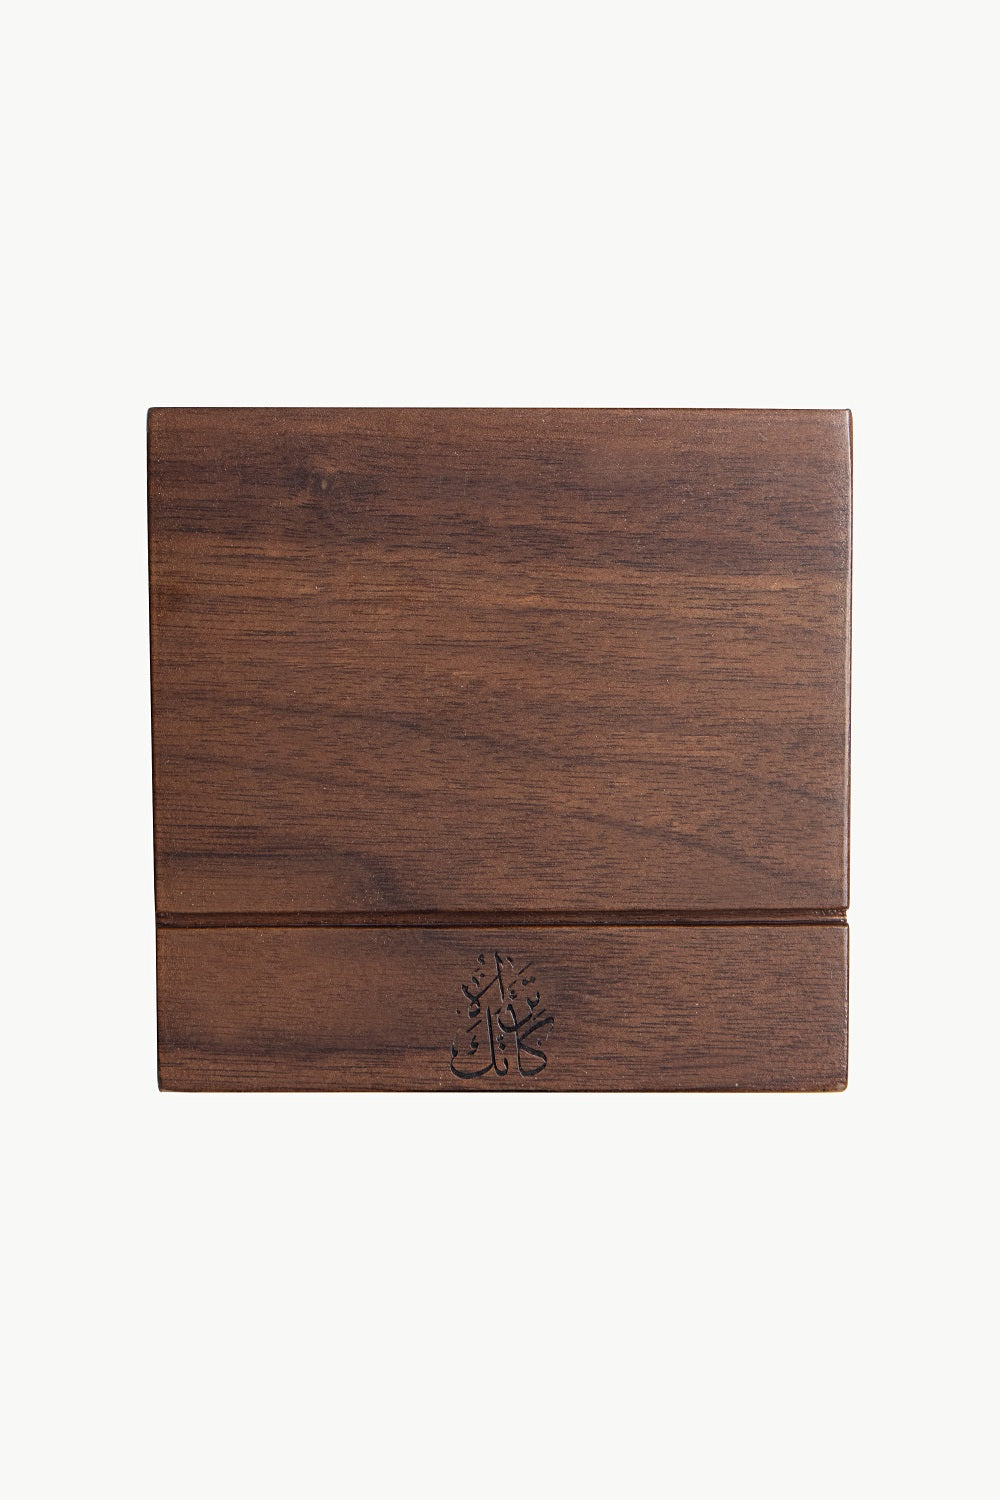 Thikr Natural Wood Box